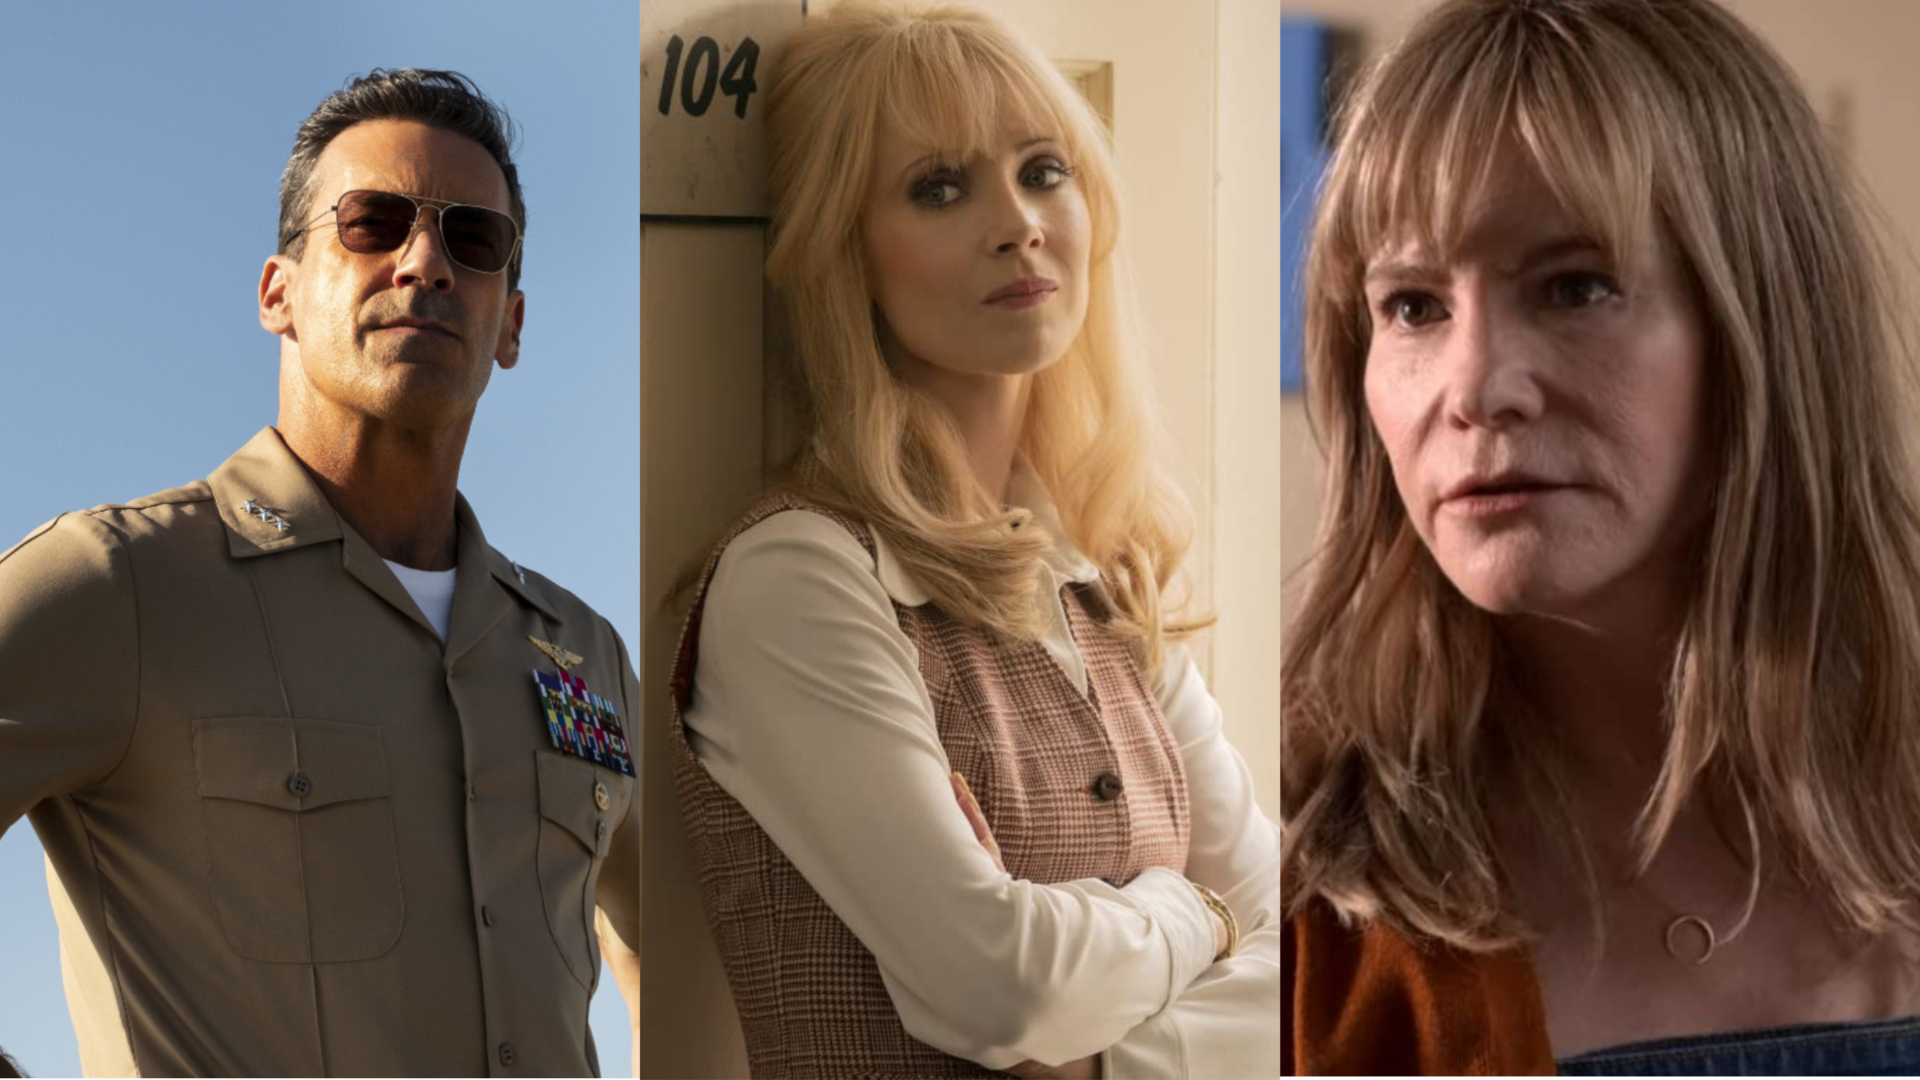 Fargo season 5 casts Jon Hamm, Juno Temple, and Jennifer Jason Leigh in